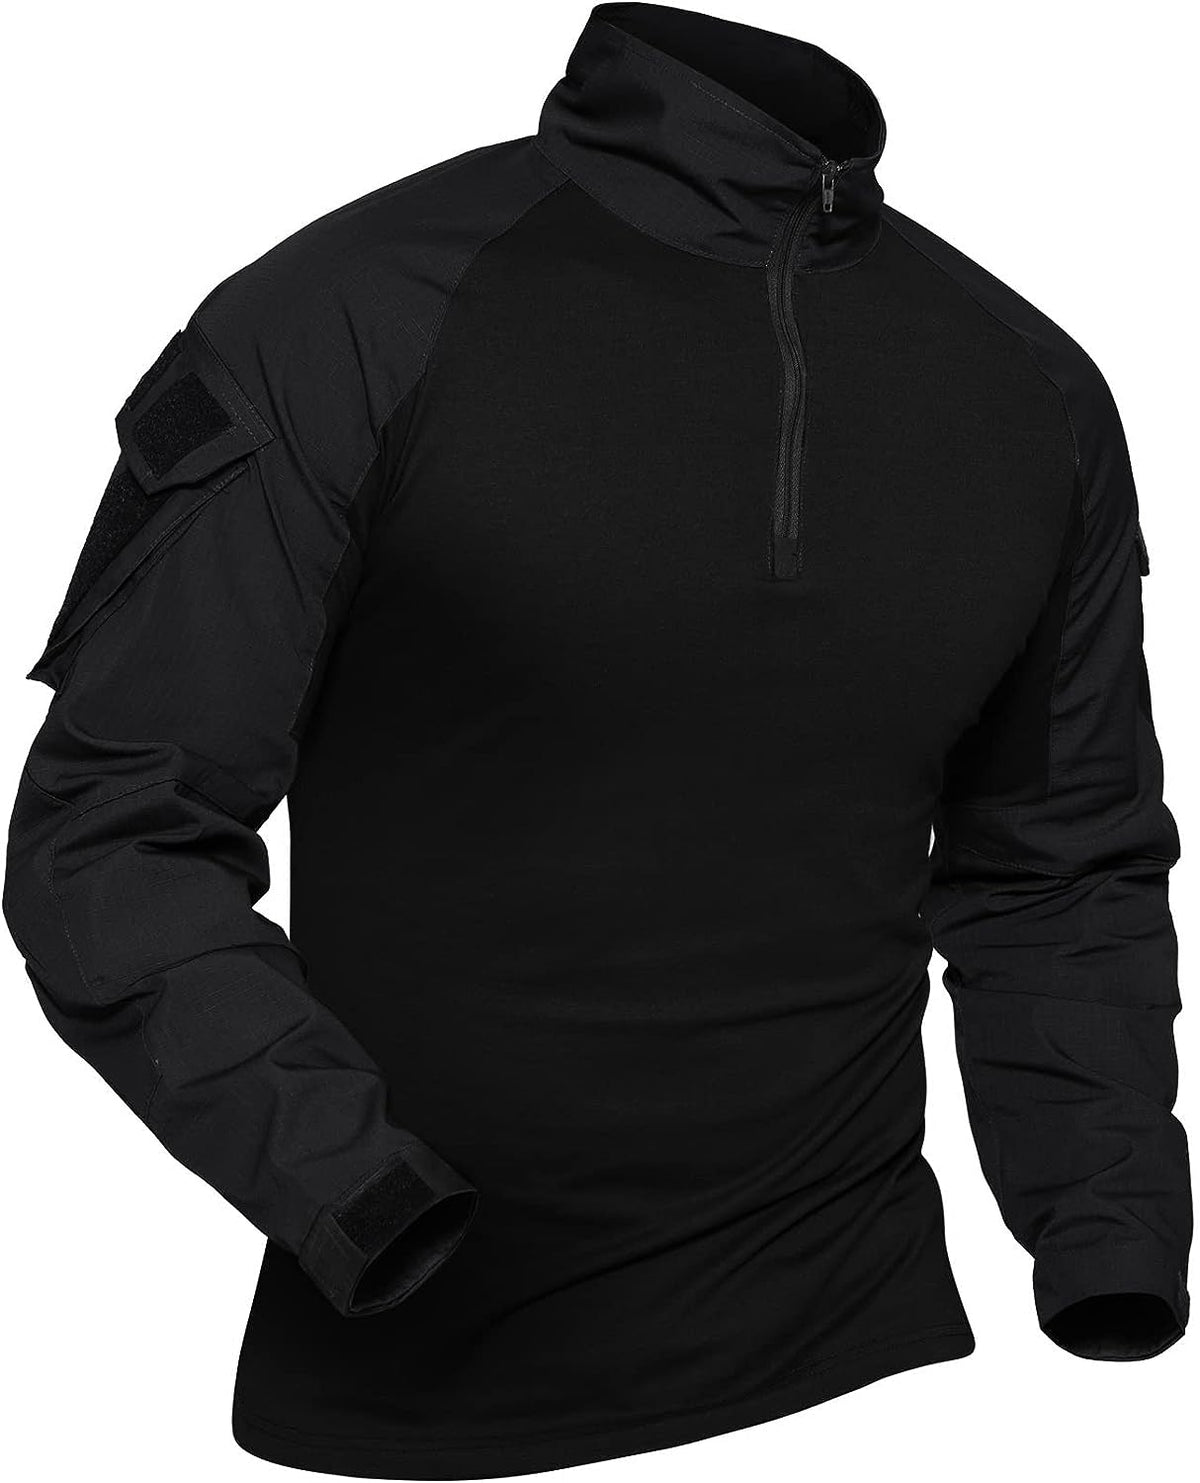 Combat Tactical Shirt for Men #Color_Black - 2 Pockets